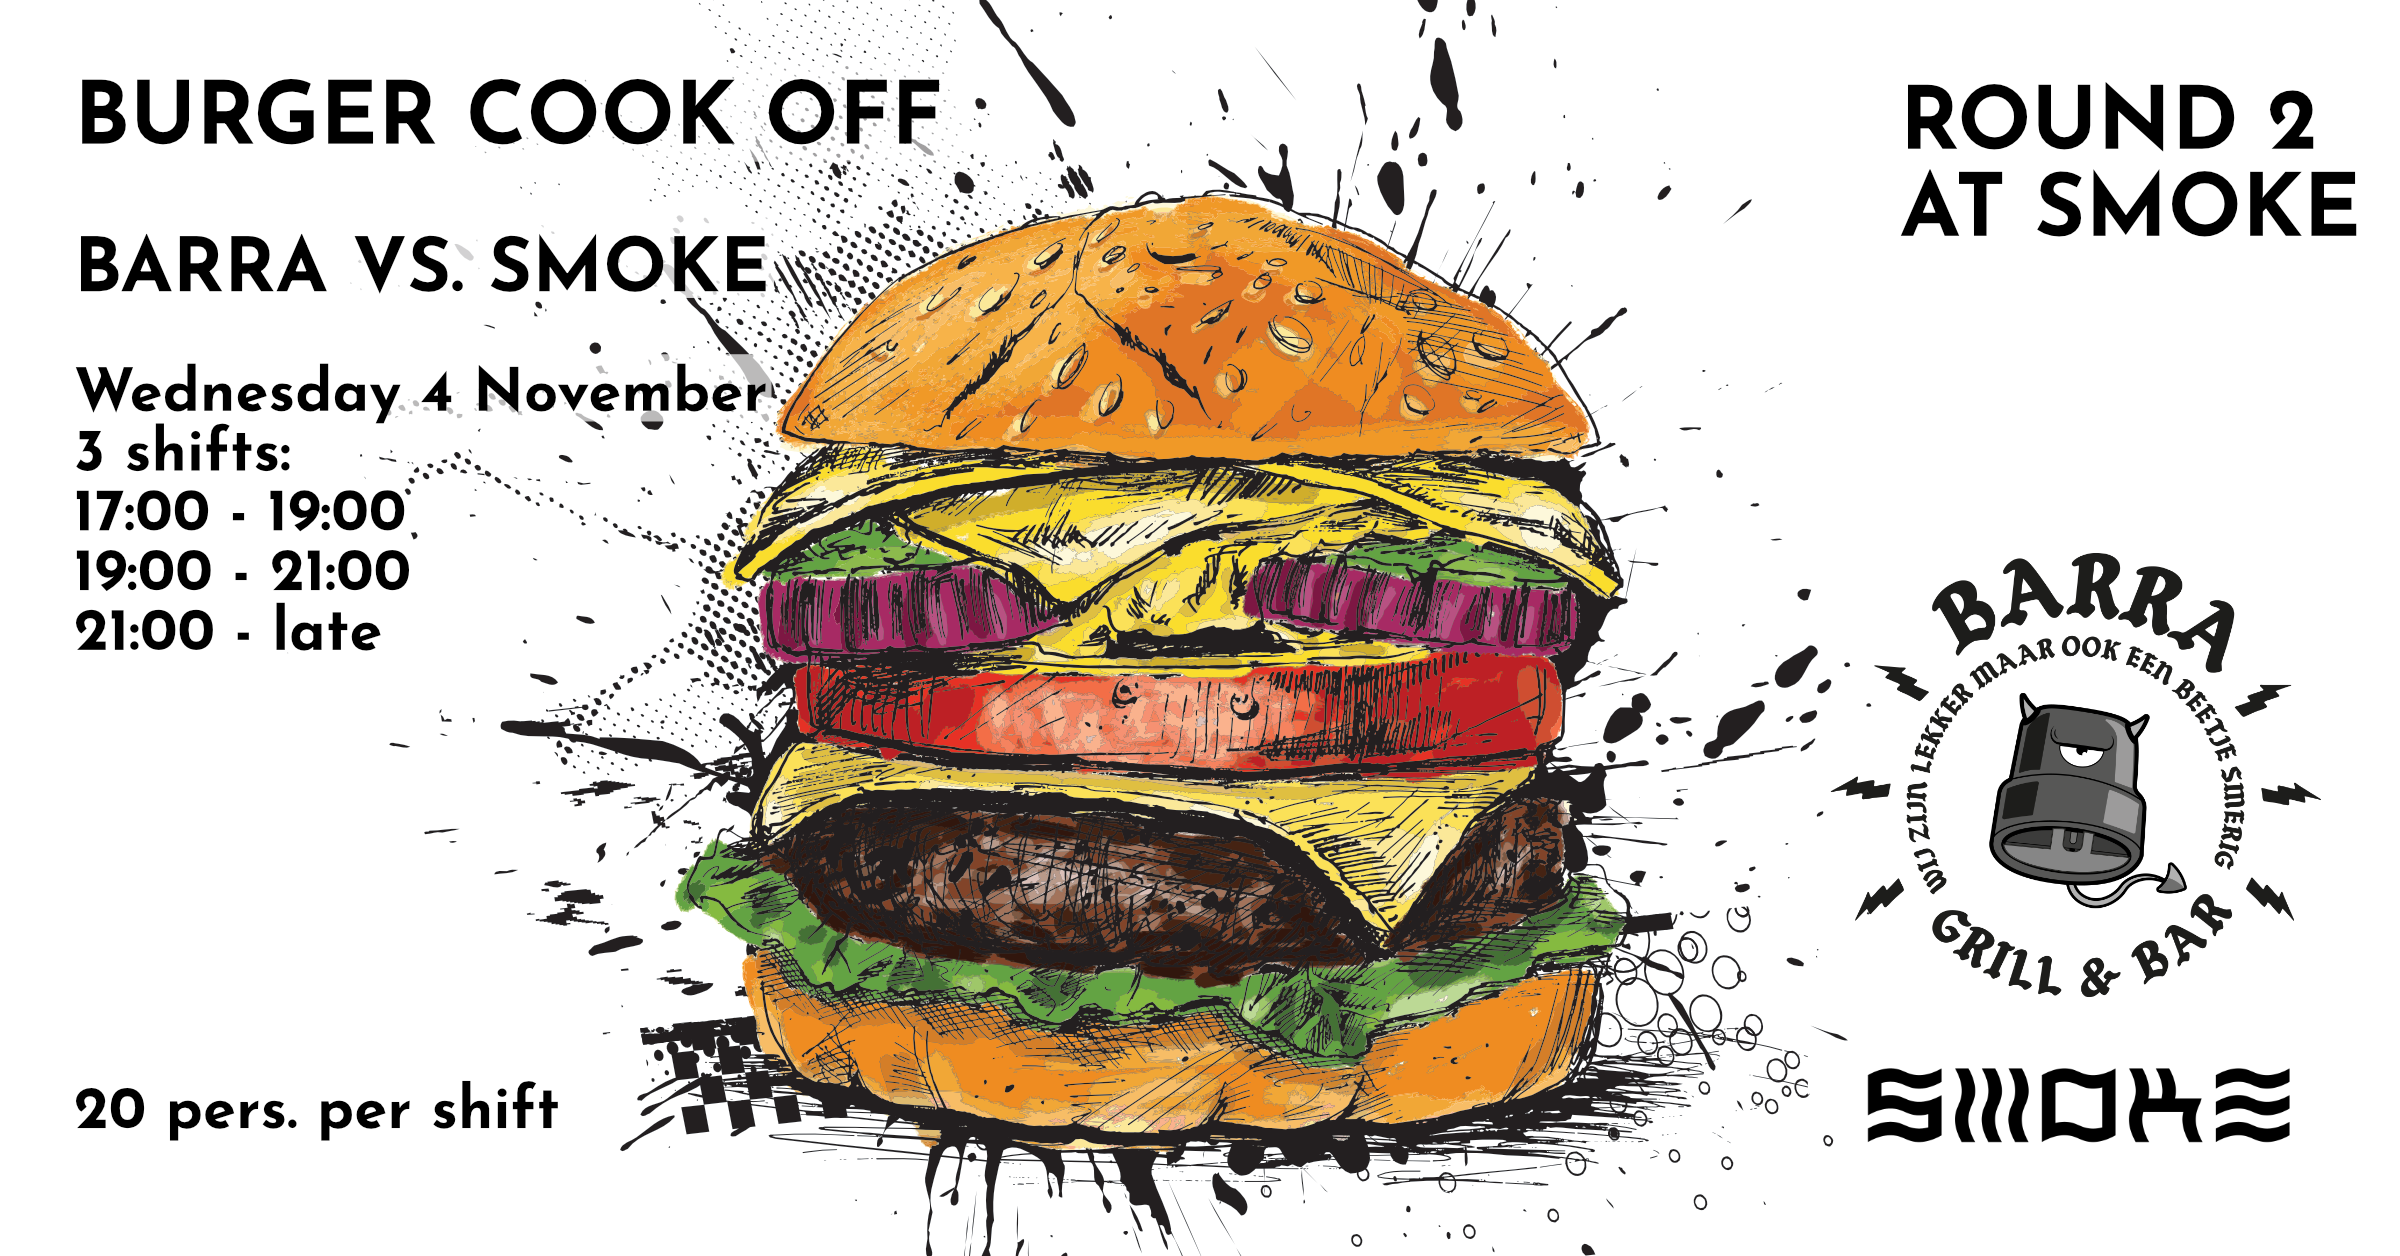 Burger Cook-Off Round 2 at Smoke